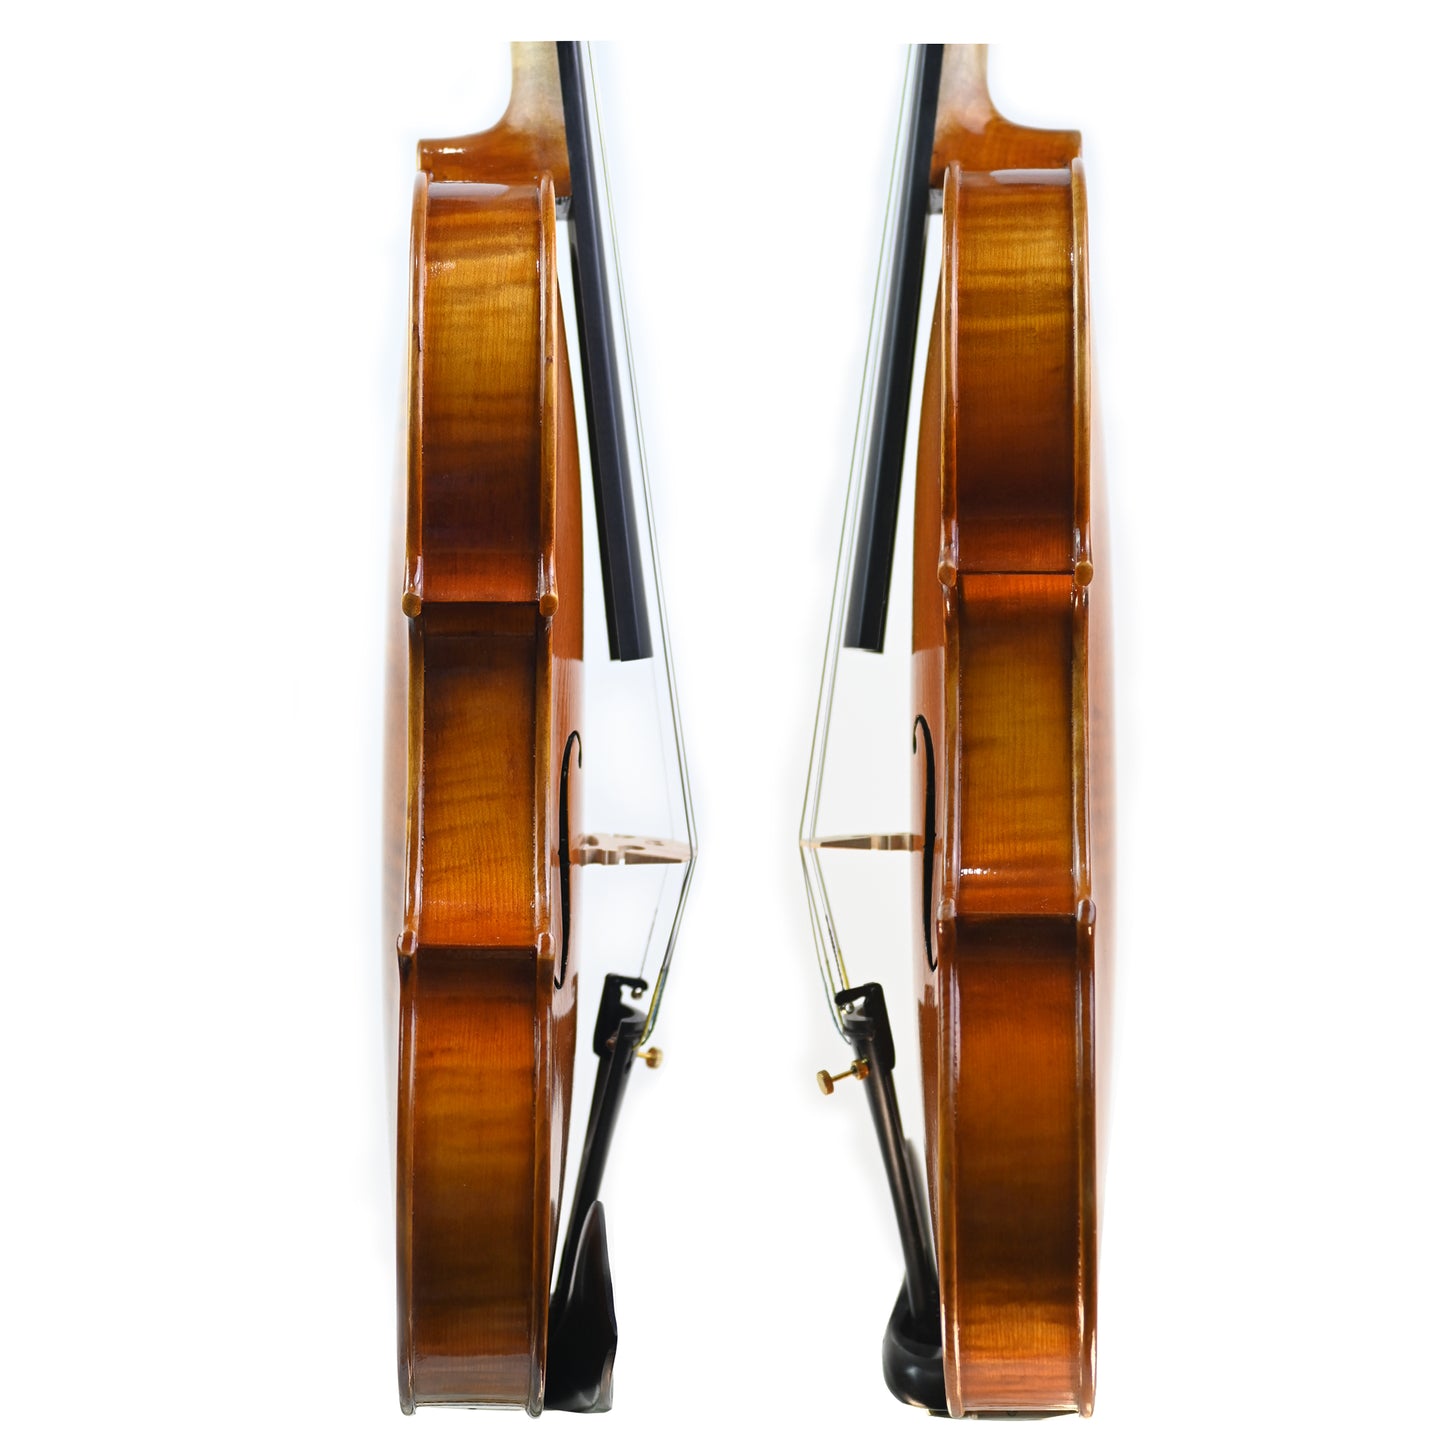 7018 beginner violin rib